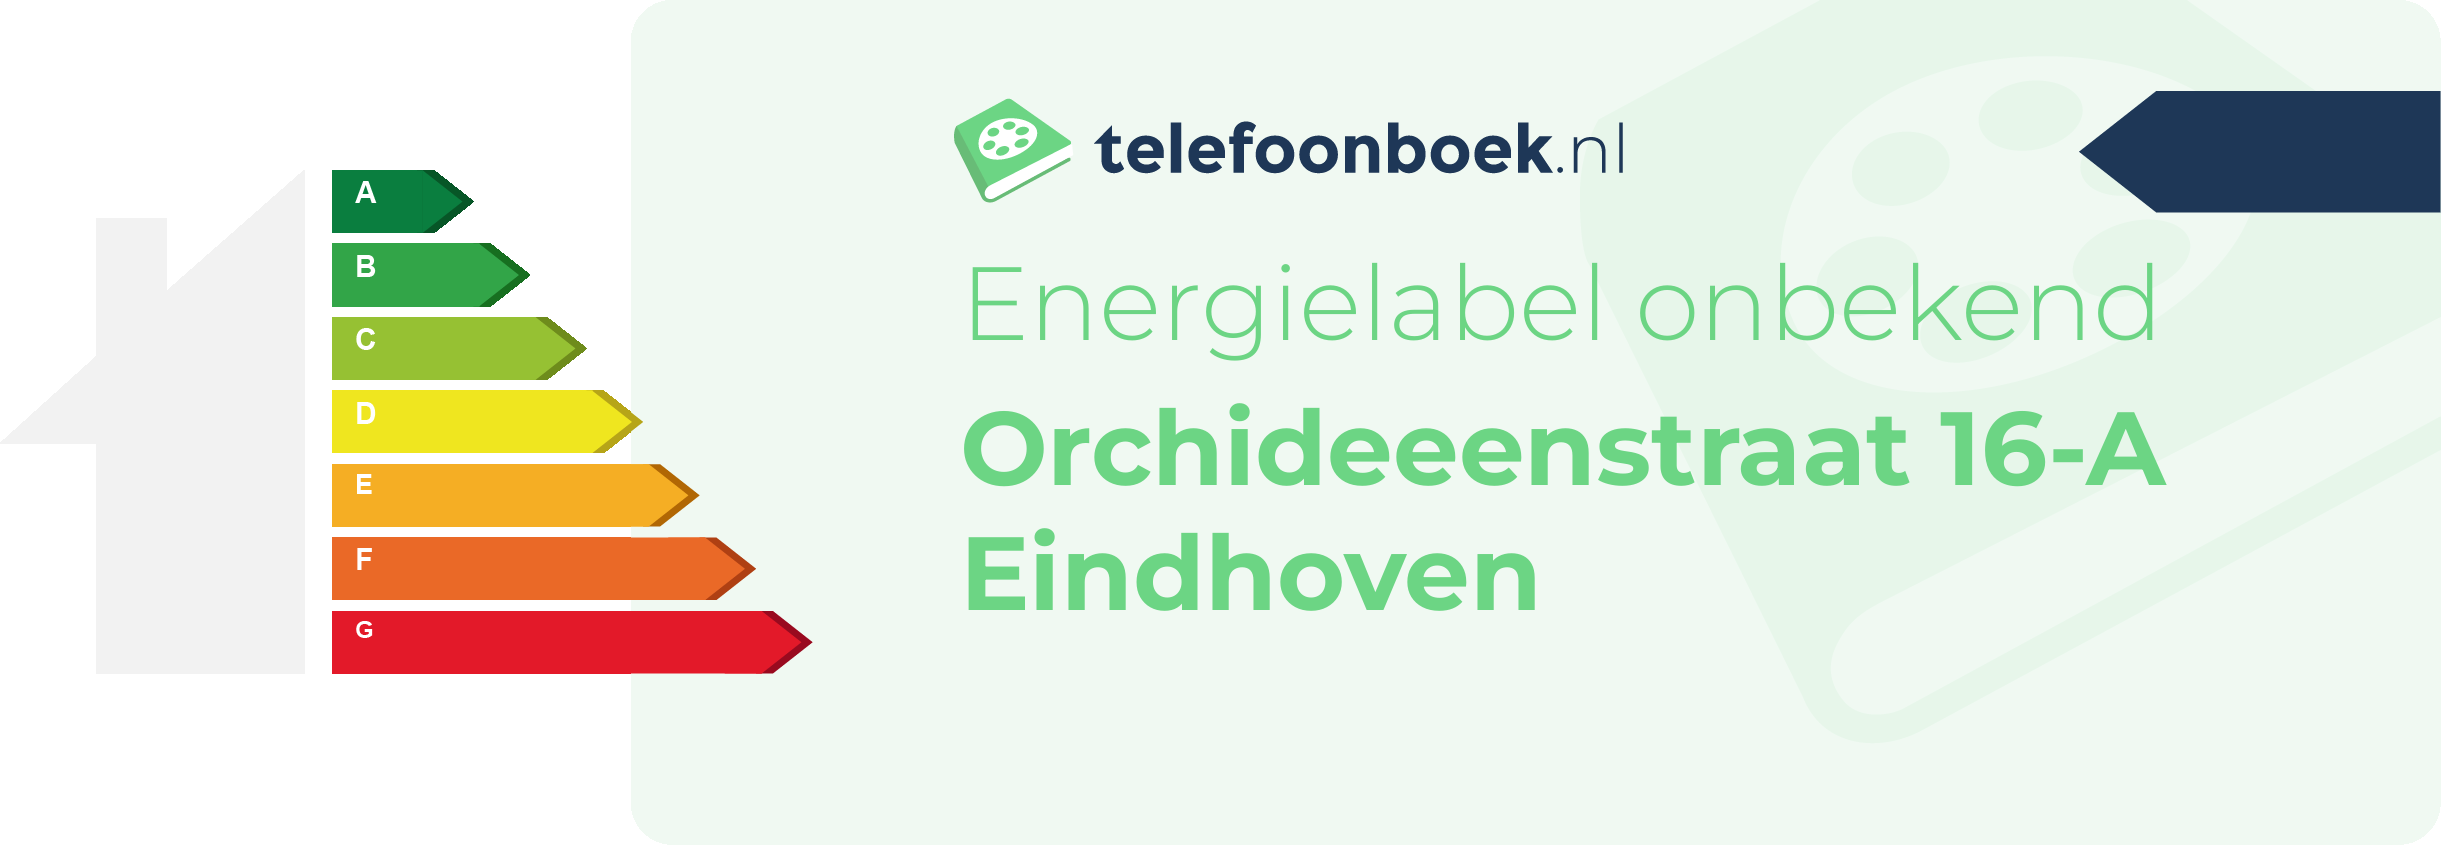 Energielabel Orchideeenstraat 16-A Eindhoven